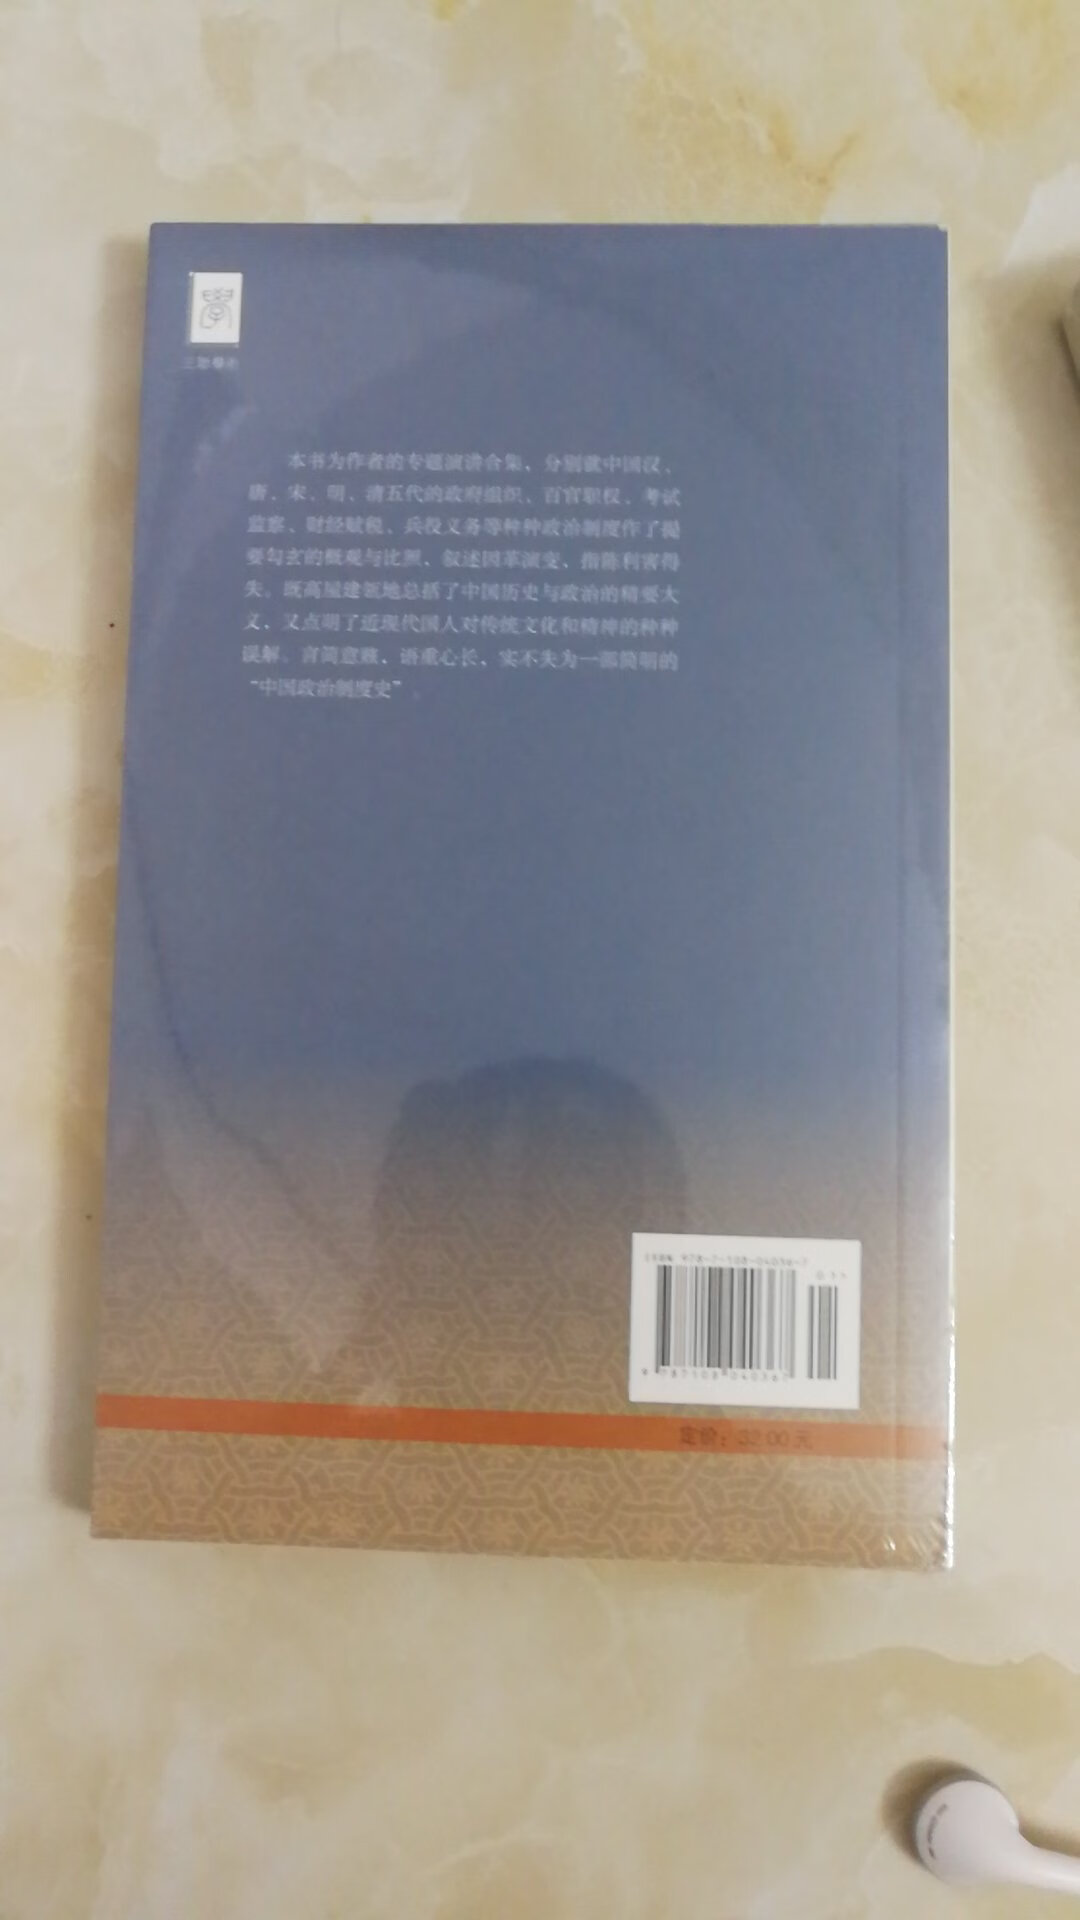 在上买到了心仪已久的《中国历代政治得失》，钱穆老先生的巨作！书本包装很好，没有破损。送货速度也很快，体验很棒棒哒。为点个赞！